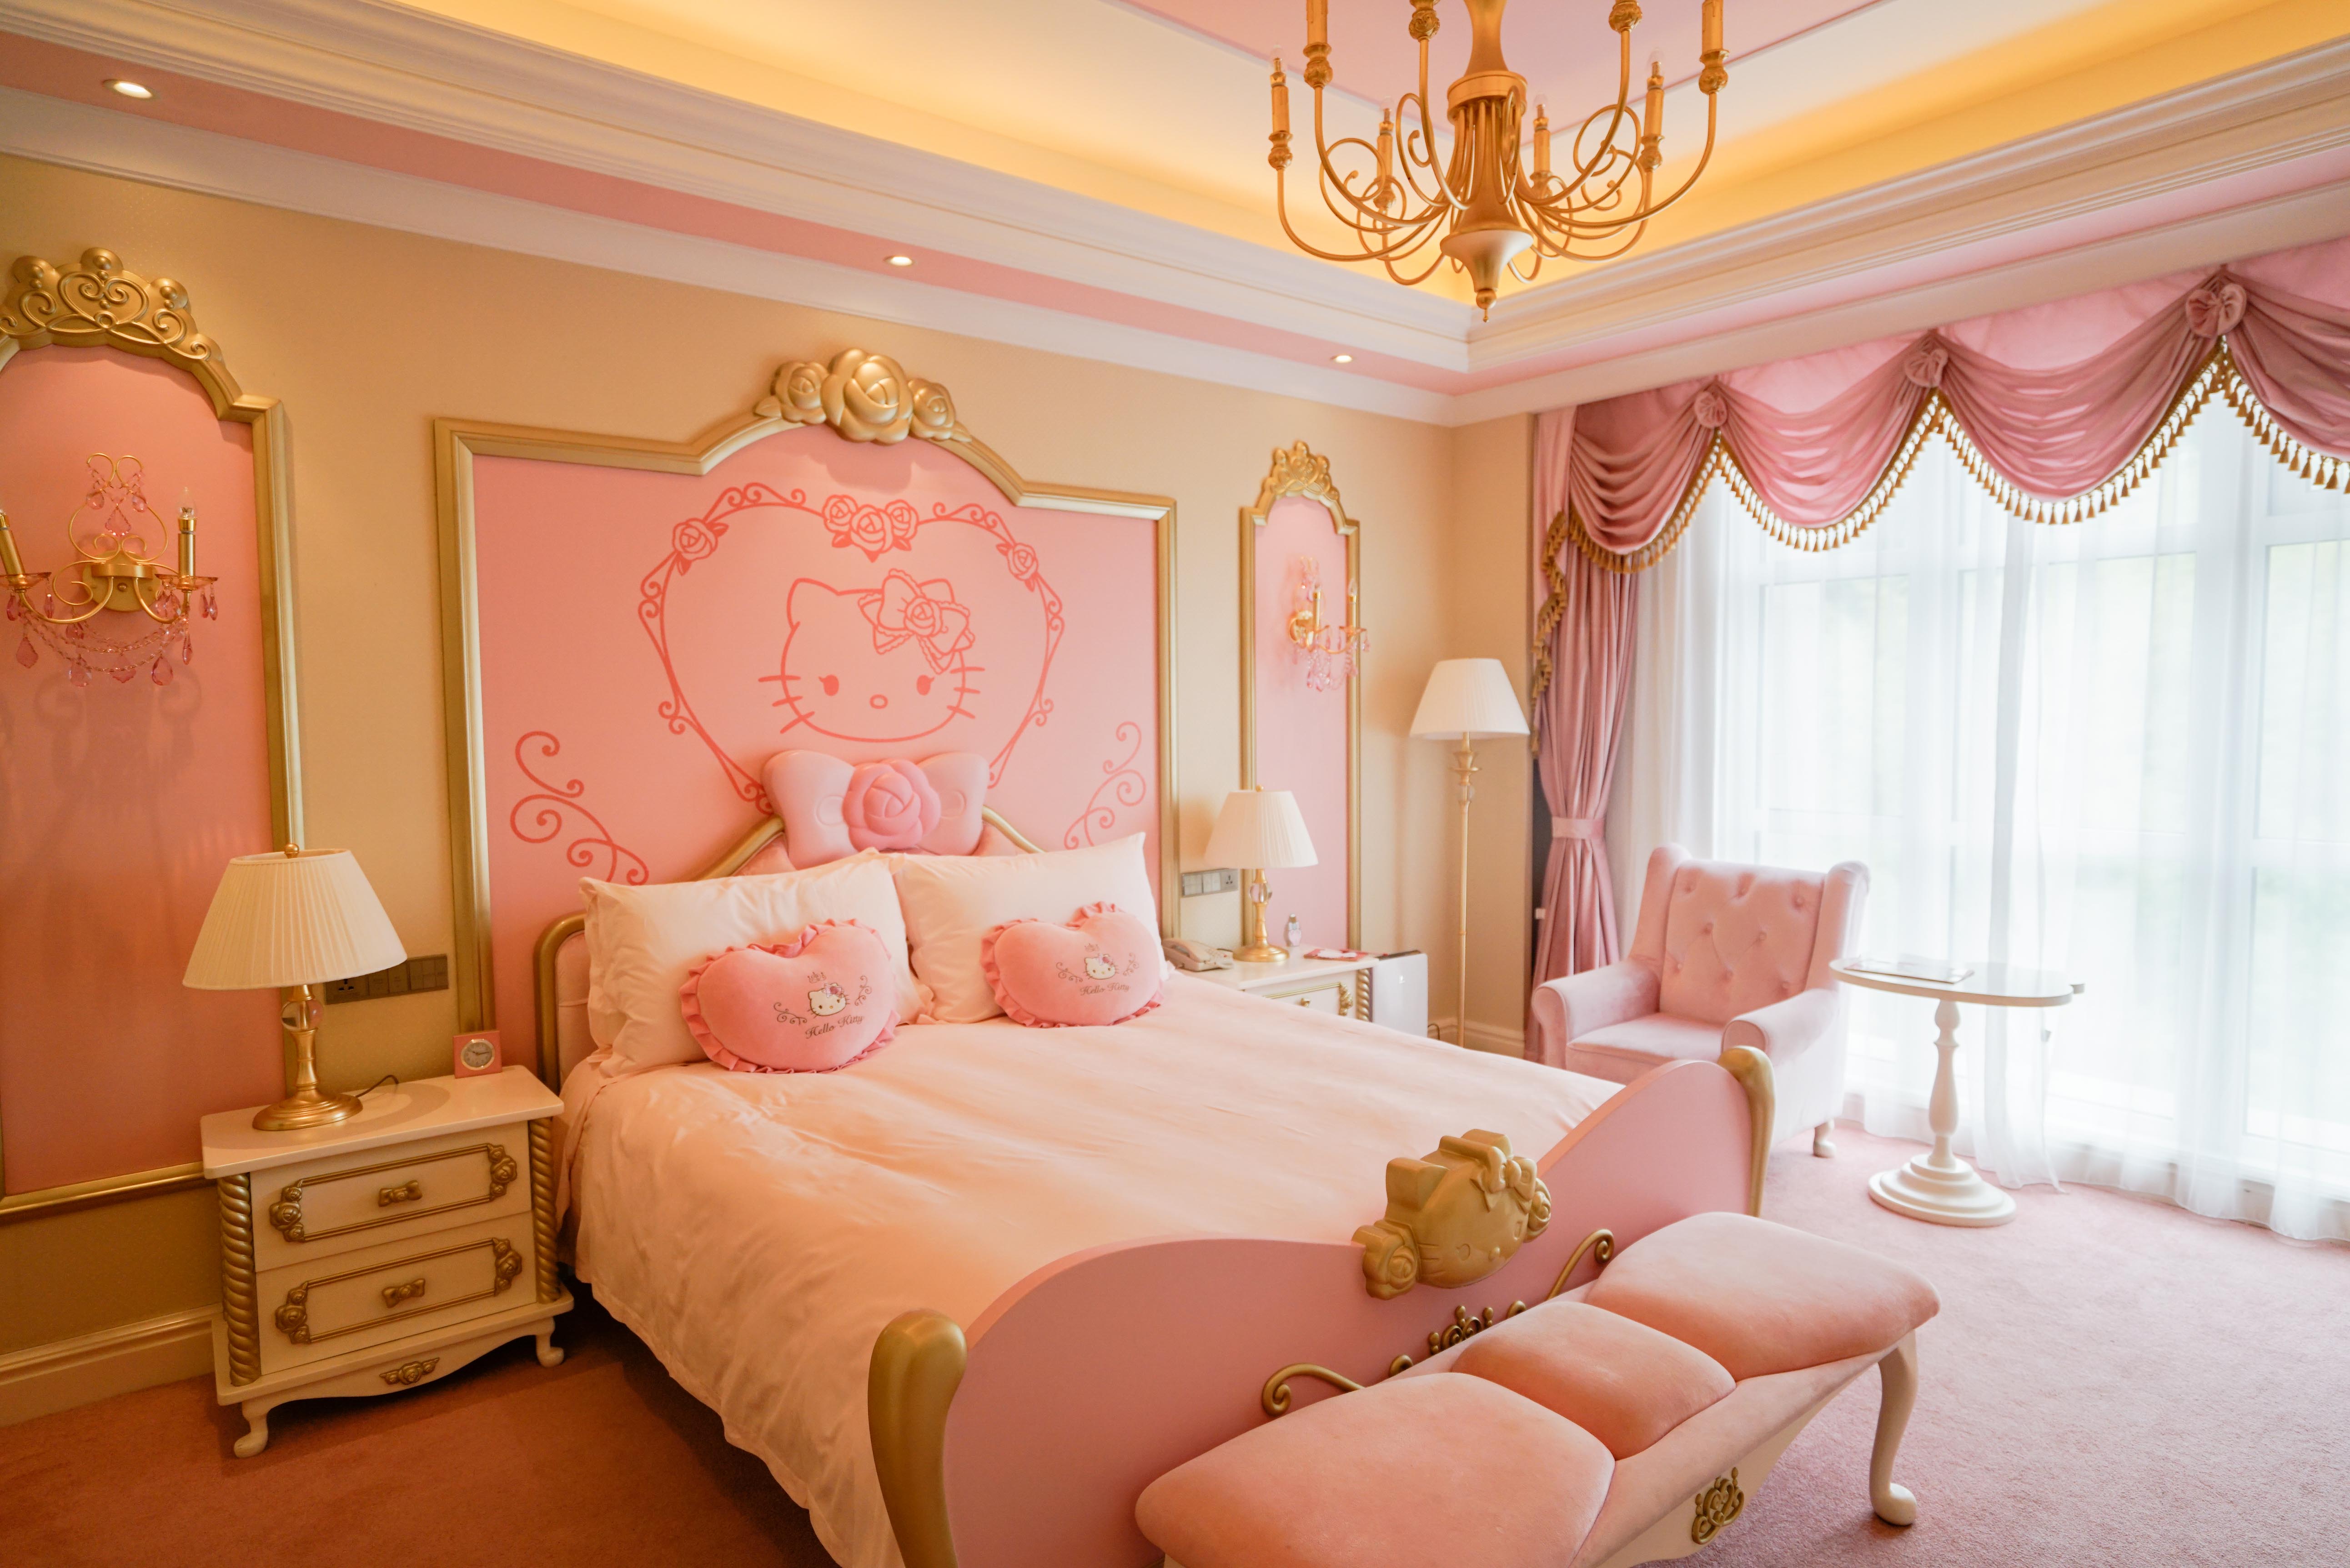 去安吉这家城堡酒店住hello kitty主题房,满眼都是粉红色,简直少女心